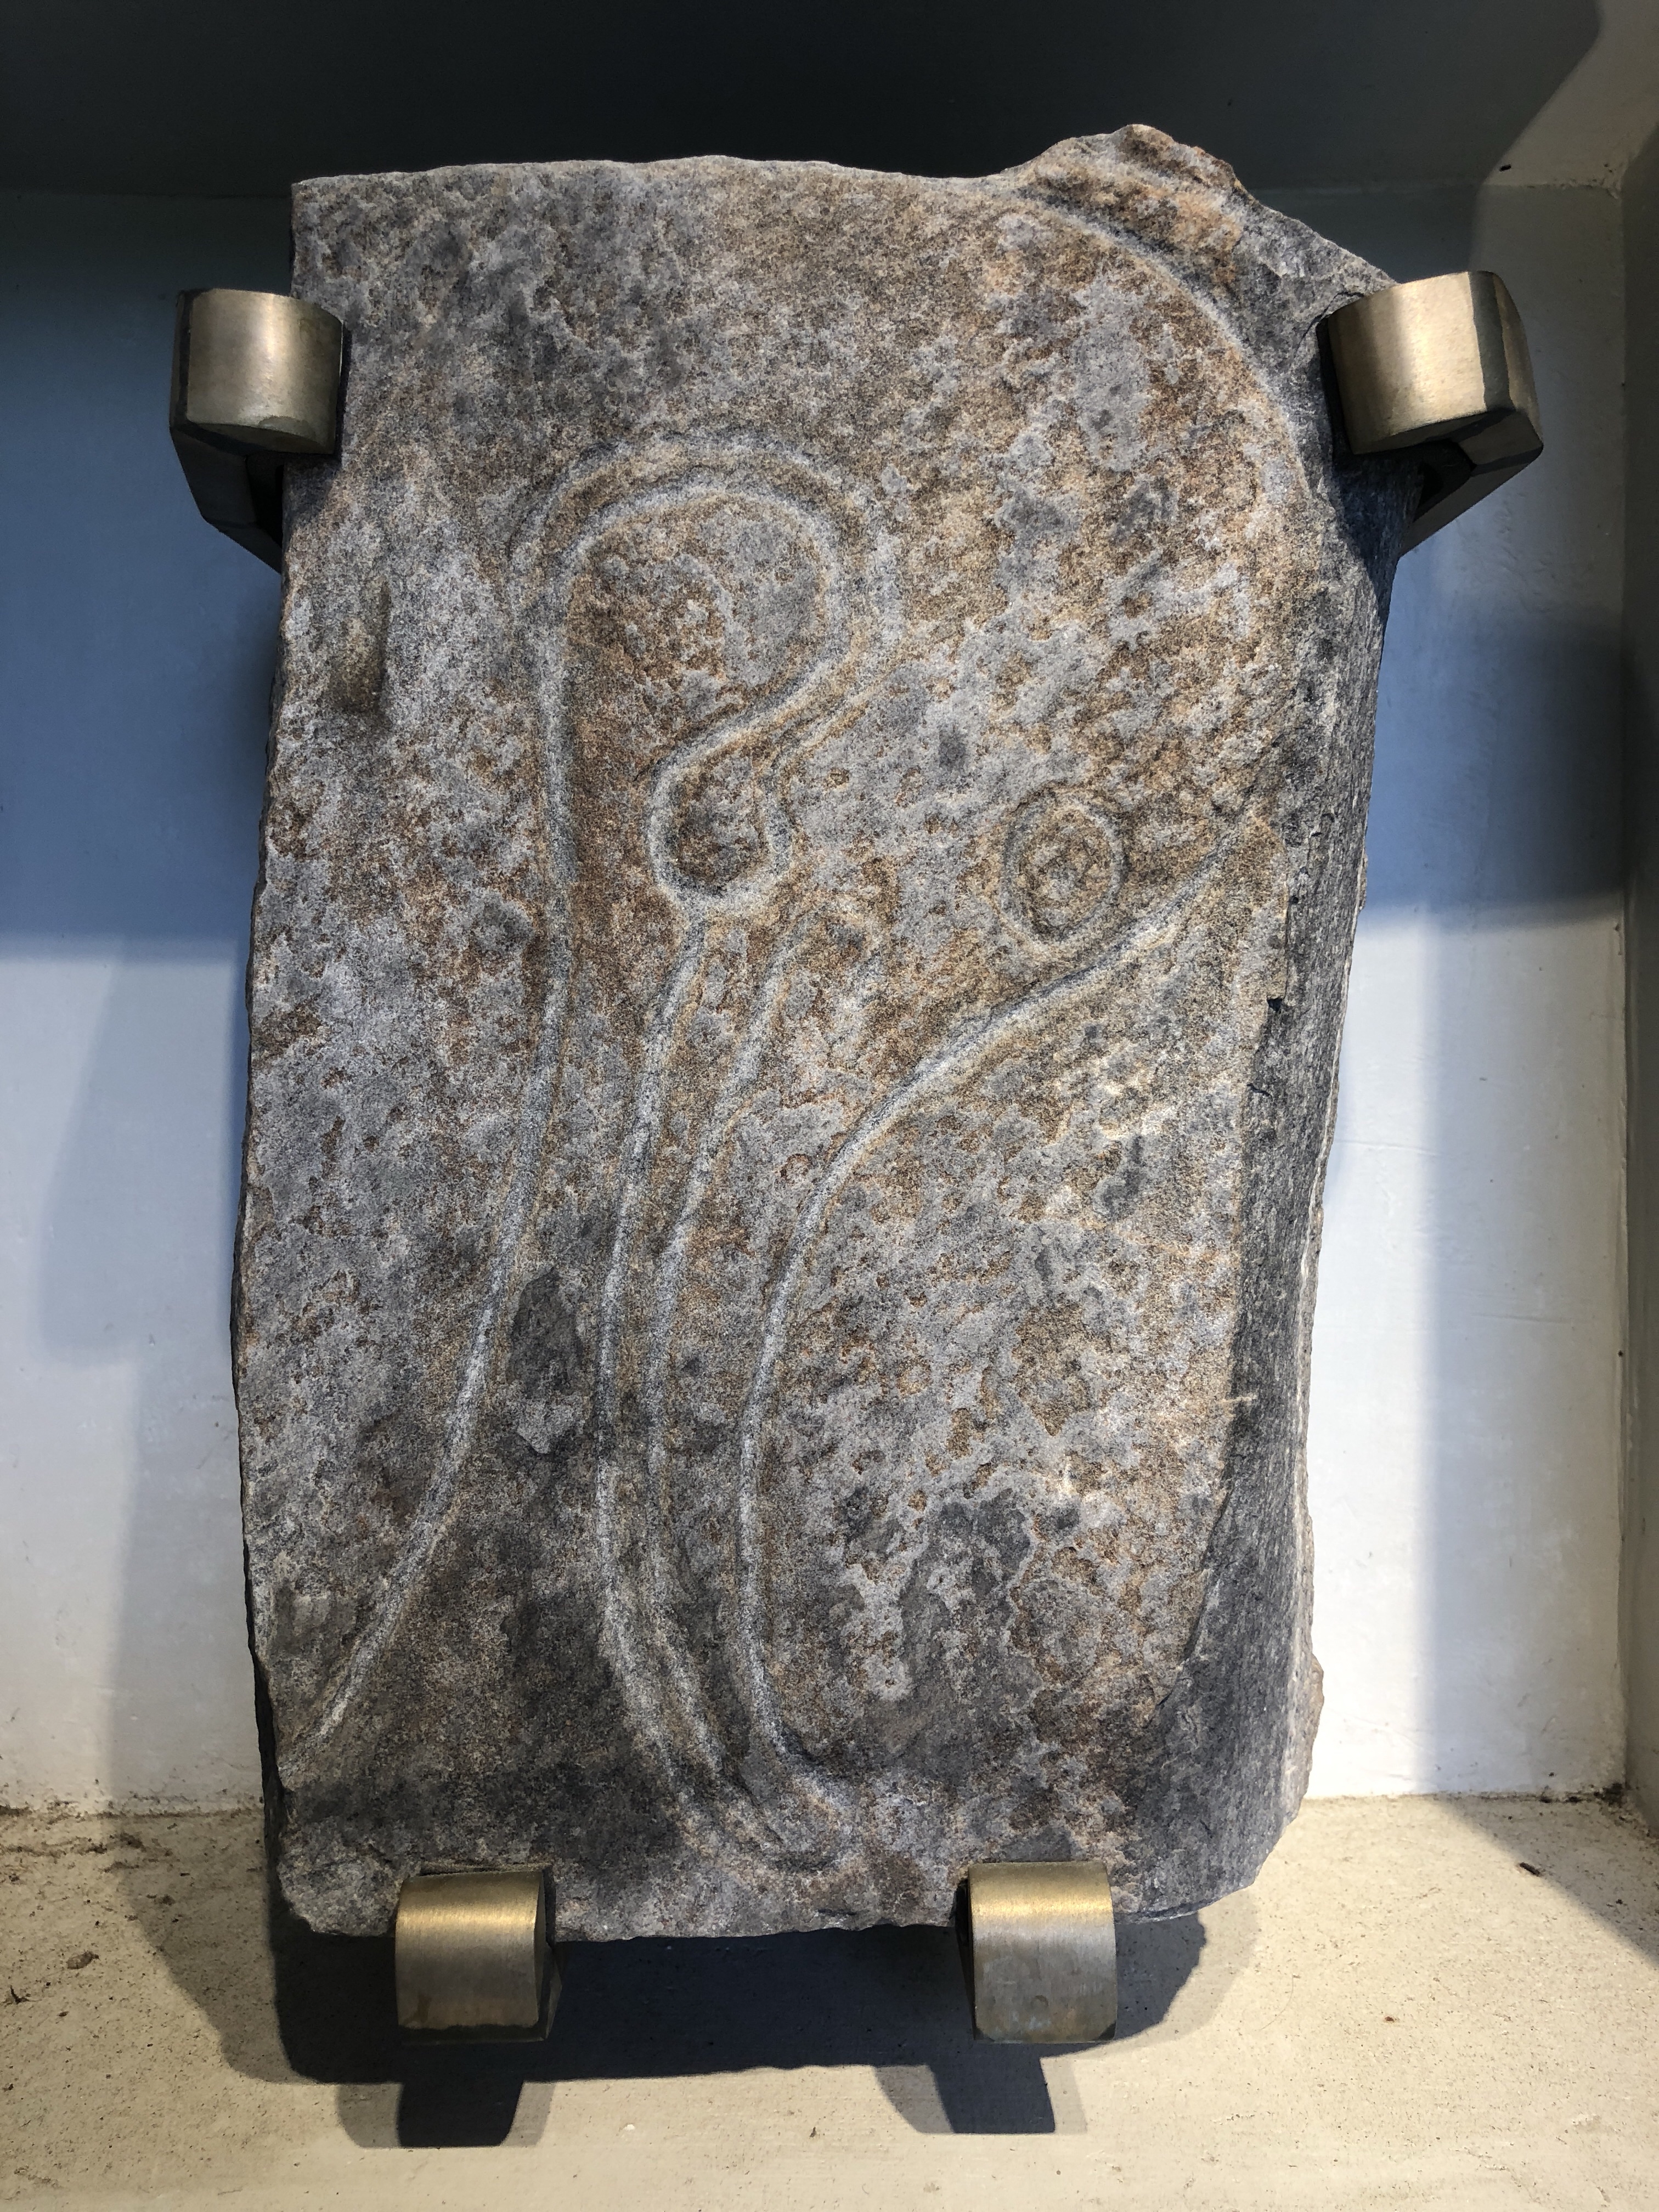 Kintore Pictish Stones